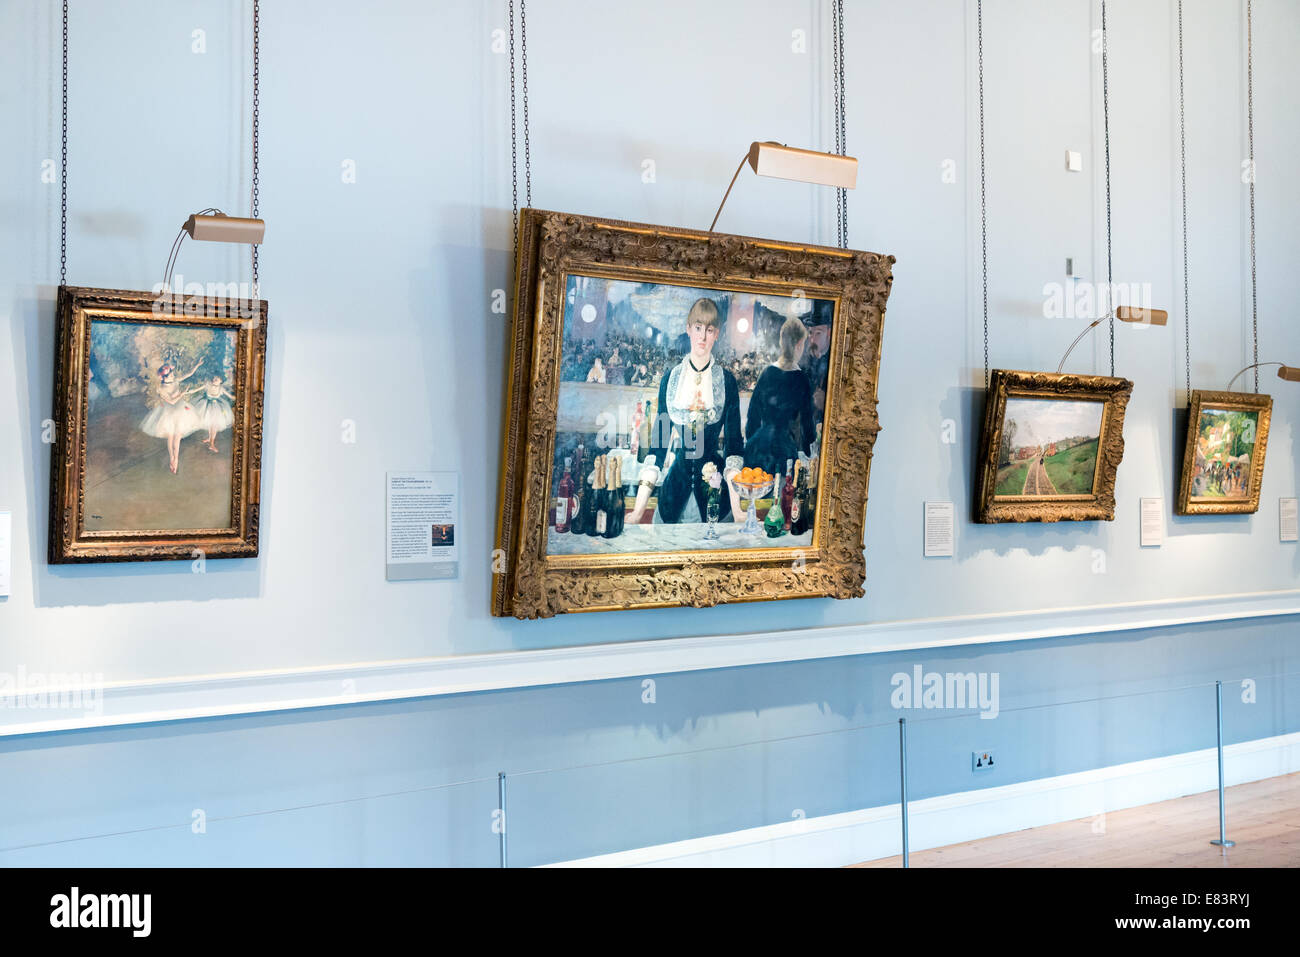 Le bar de l'Folies-Bergeres par Edouard Manet dans la Courtauld Gallery, Londres, Angleterre, Royaume-Uni Banque D'Images